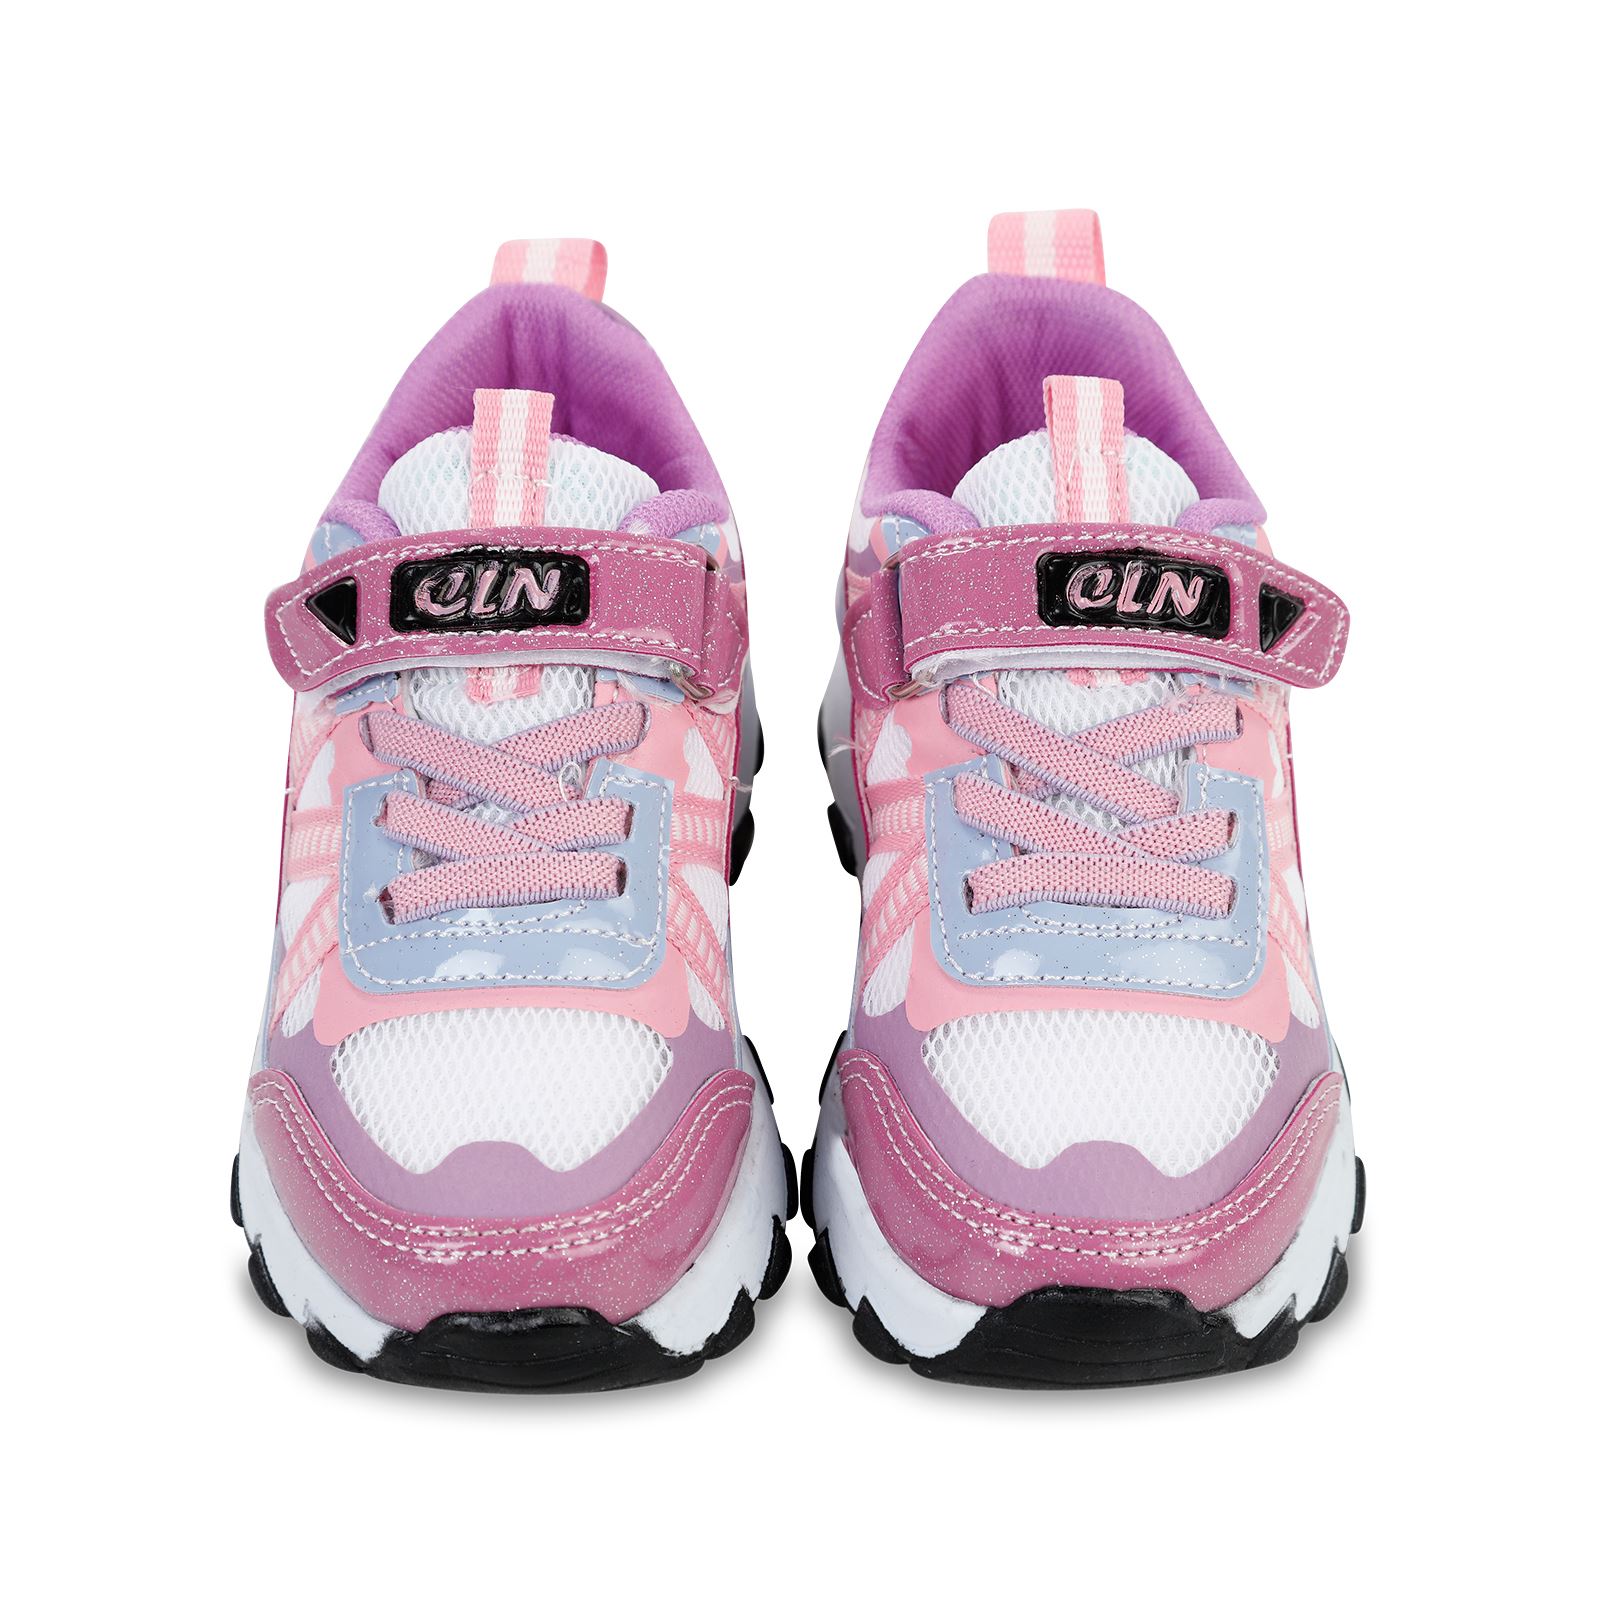 Callion Kız Çocuk Spor Ayakkabı 31-35 Numara Beyaz-Pembe